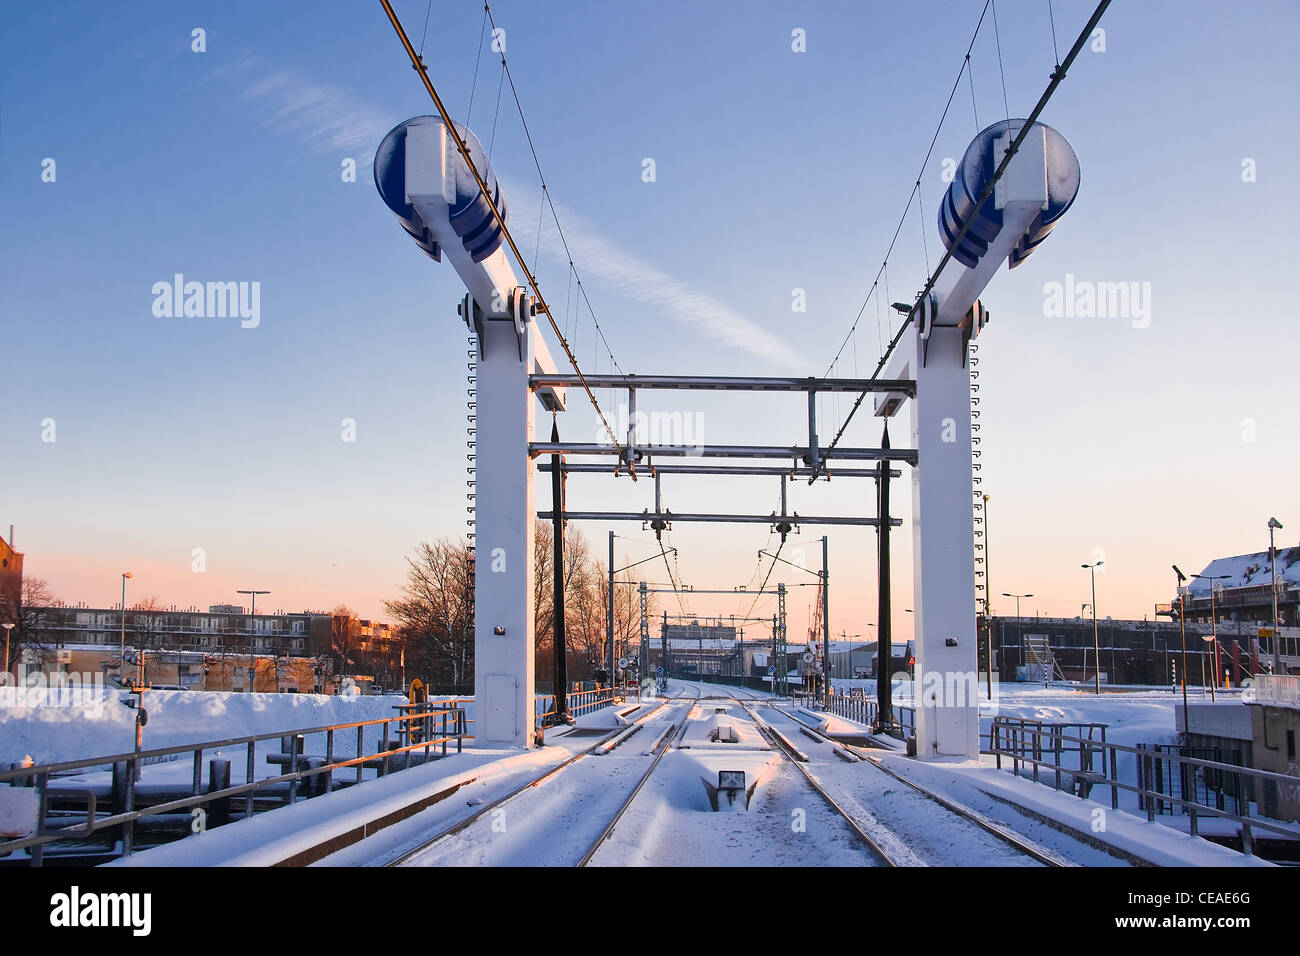 Trainieren Sie heben Brücke im Schnee am frühen Wintermorgen - horizontales Bild Stockfoto